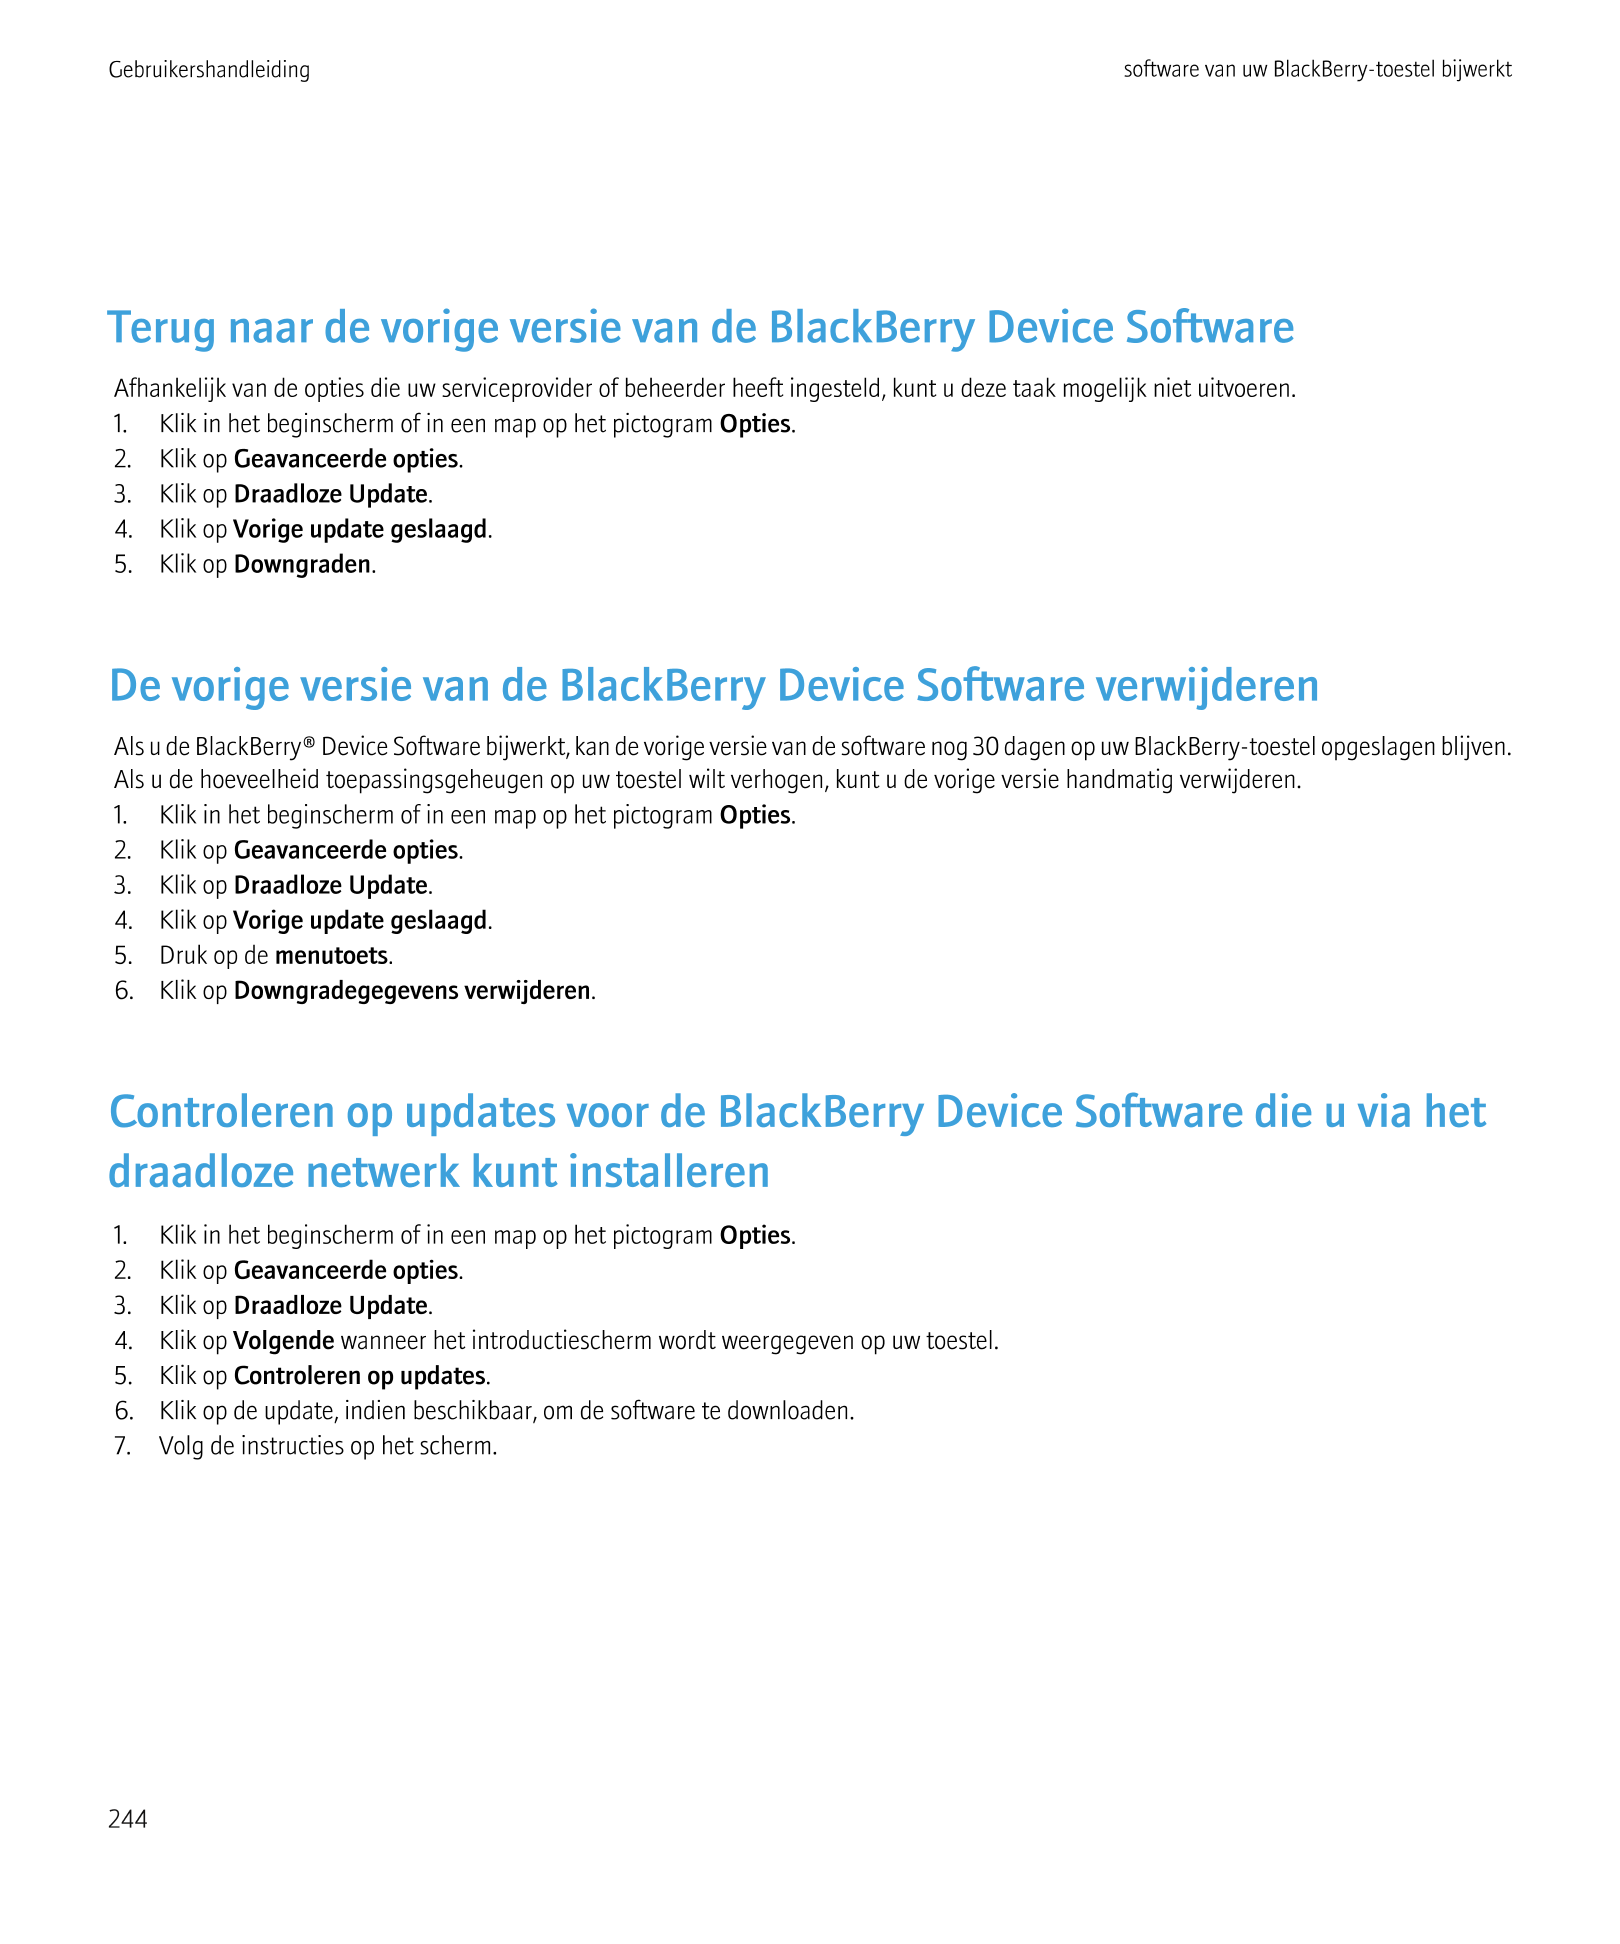 Gebruikershandleiding software van uw BlackBerry-toestel bijwerkt
Terug naar de vorige versie van de BlackBerry Device Software
